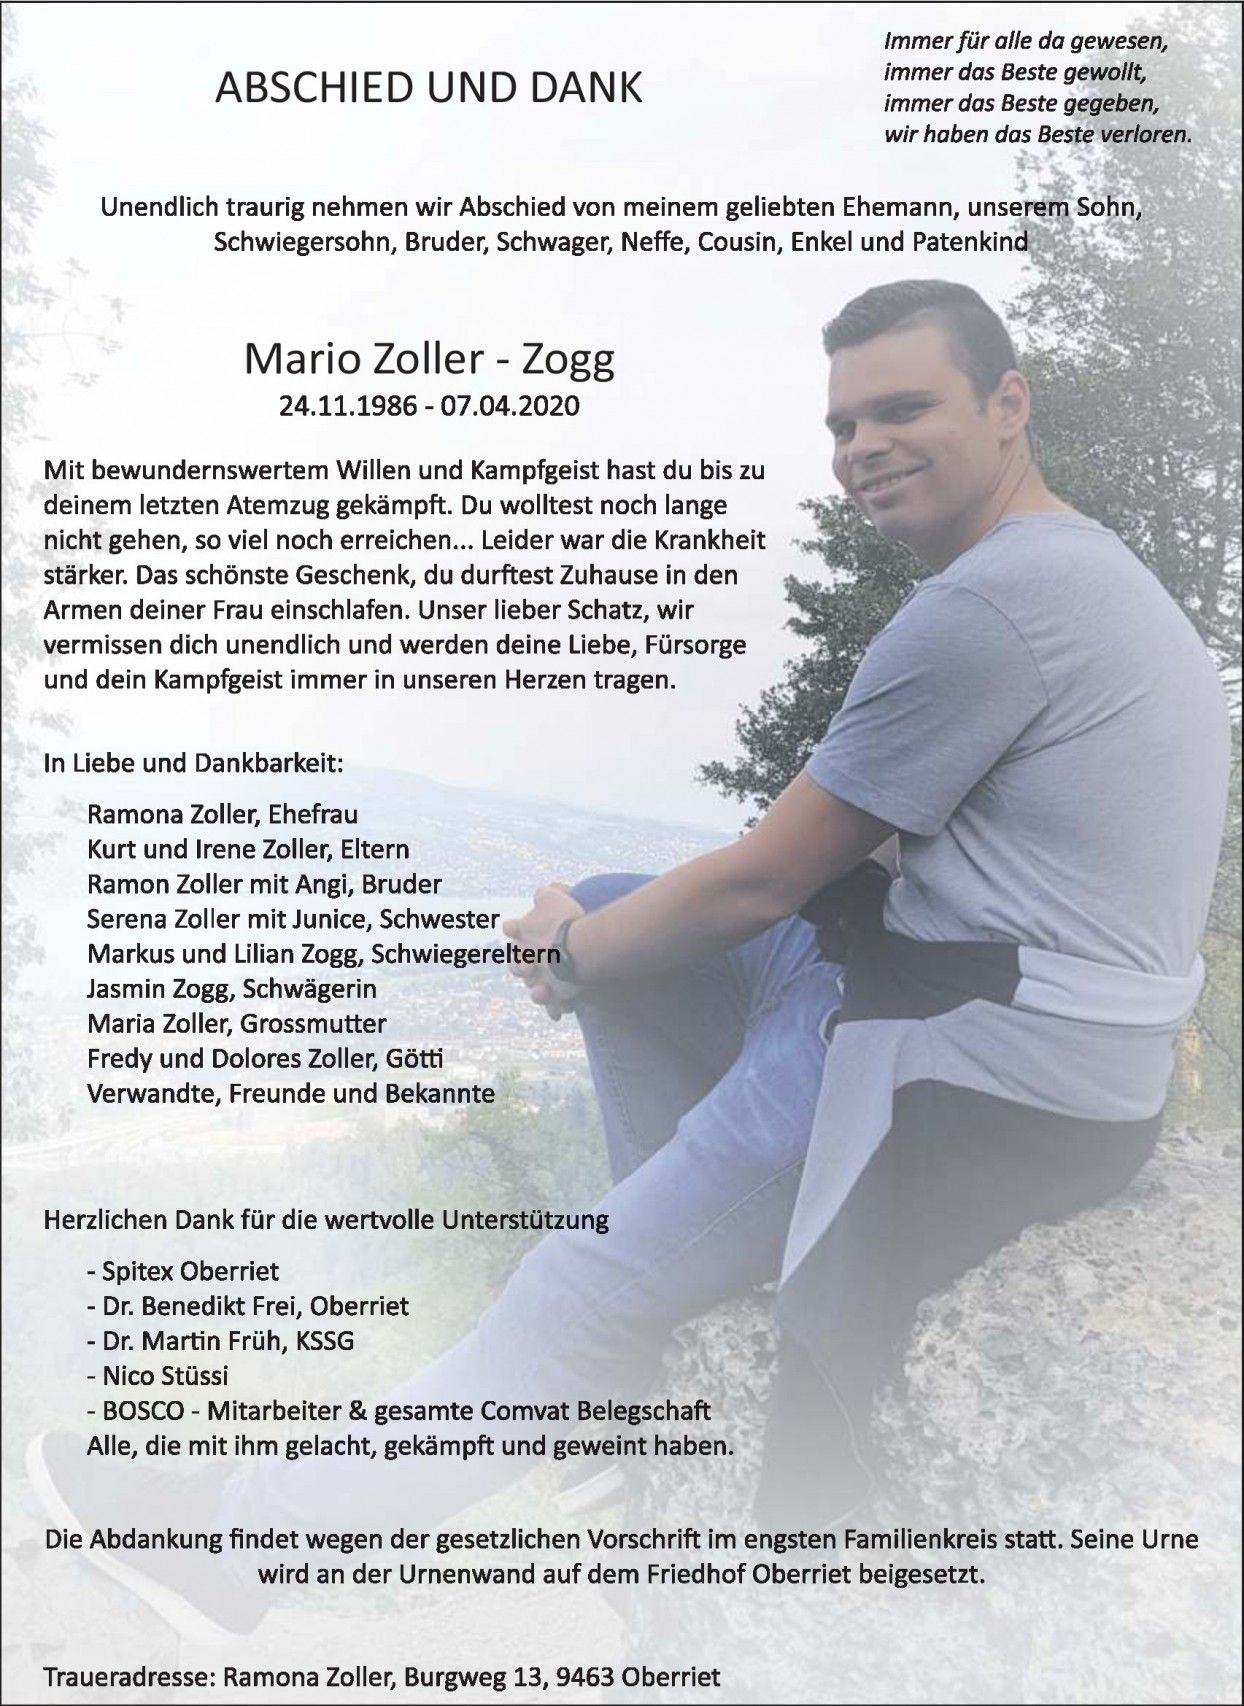 Mario Zoller-Zogg